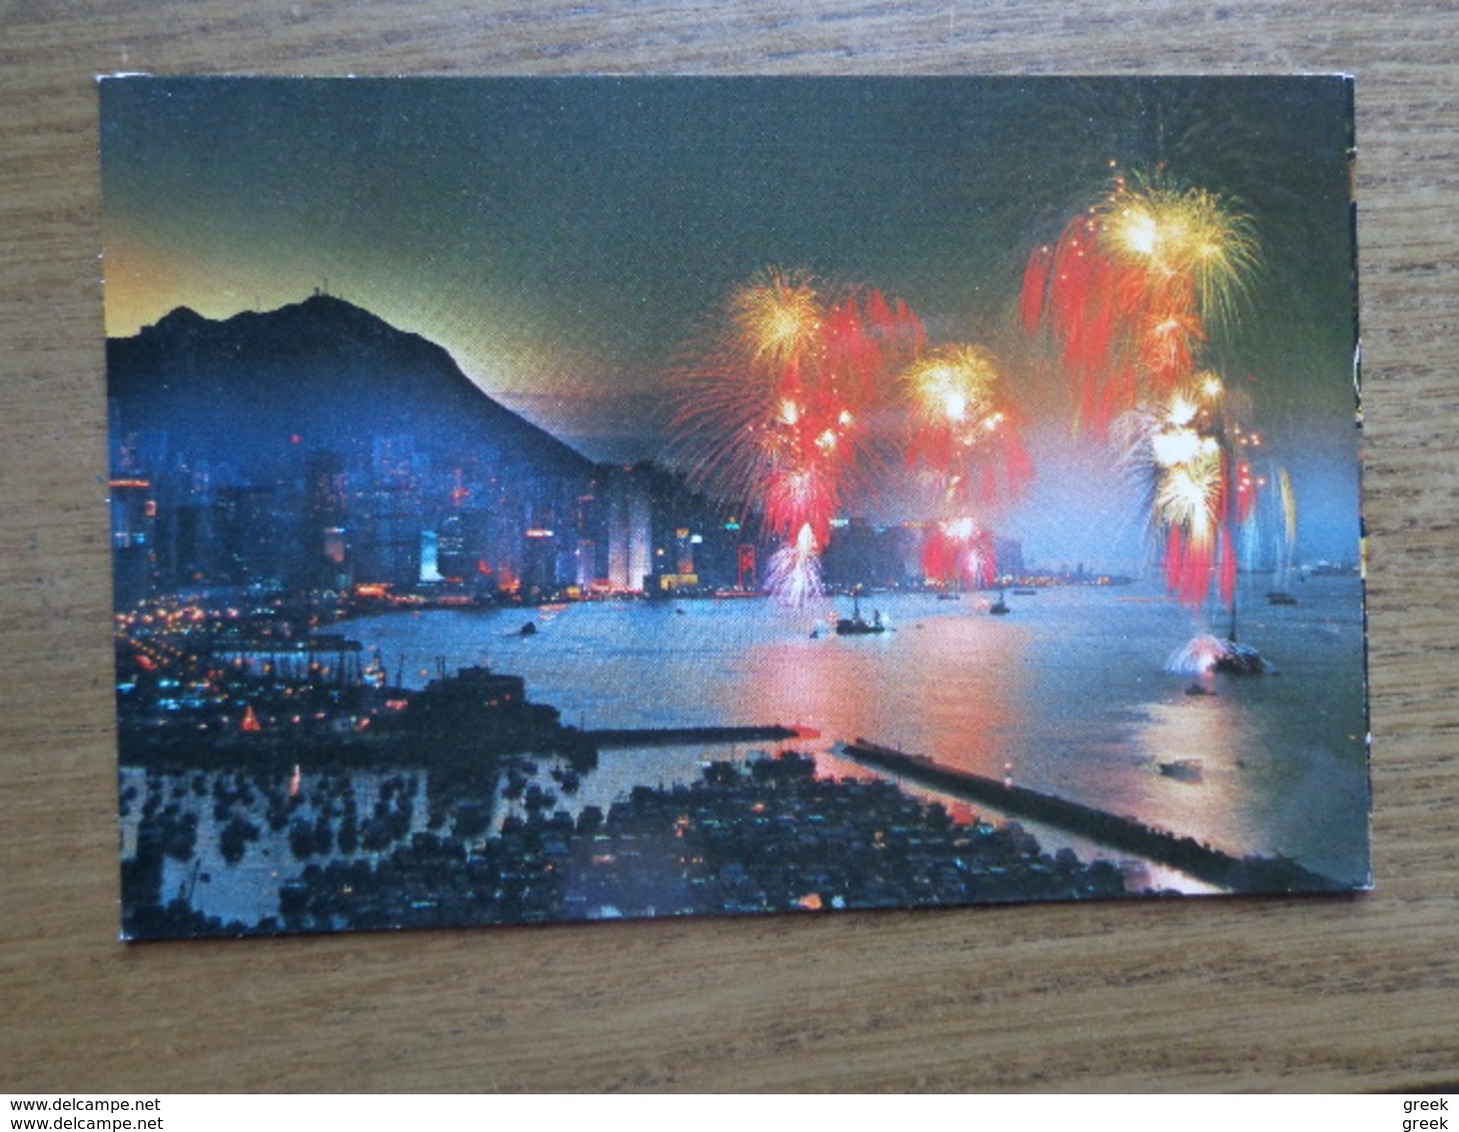 KOOPJE / Doos postkaarten (3kg430)  Allerlei landen en thema's (veel Azië) - zie foto's